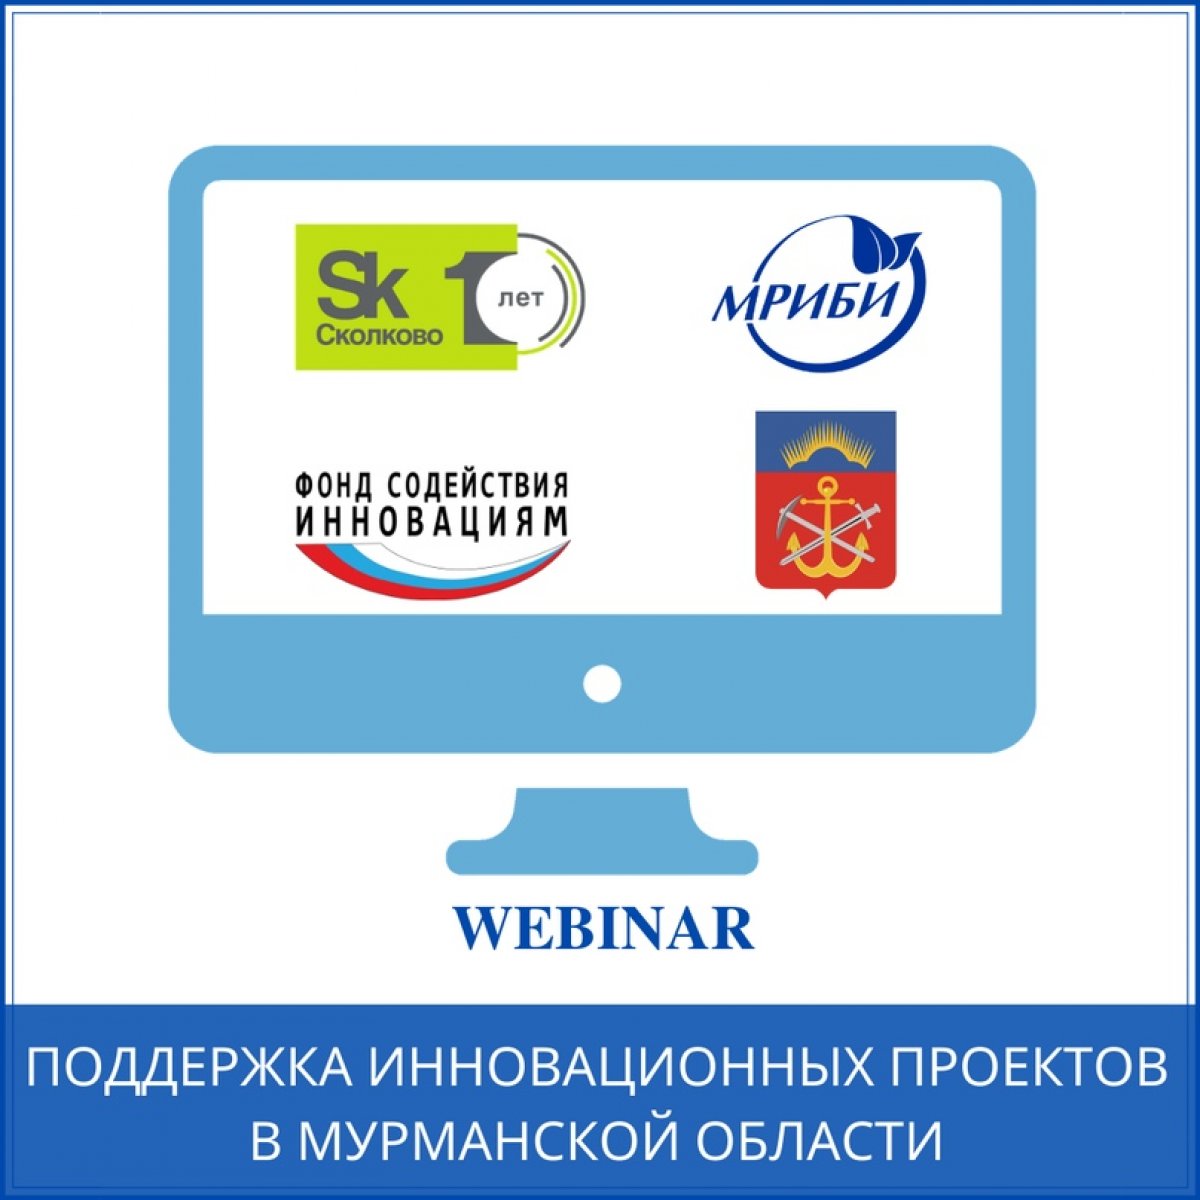 30.10.2020 в 14:00 состоится вебинар на тему «Поддержка инновационных проектов в Мурманской области».